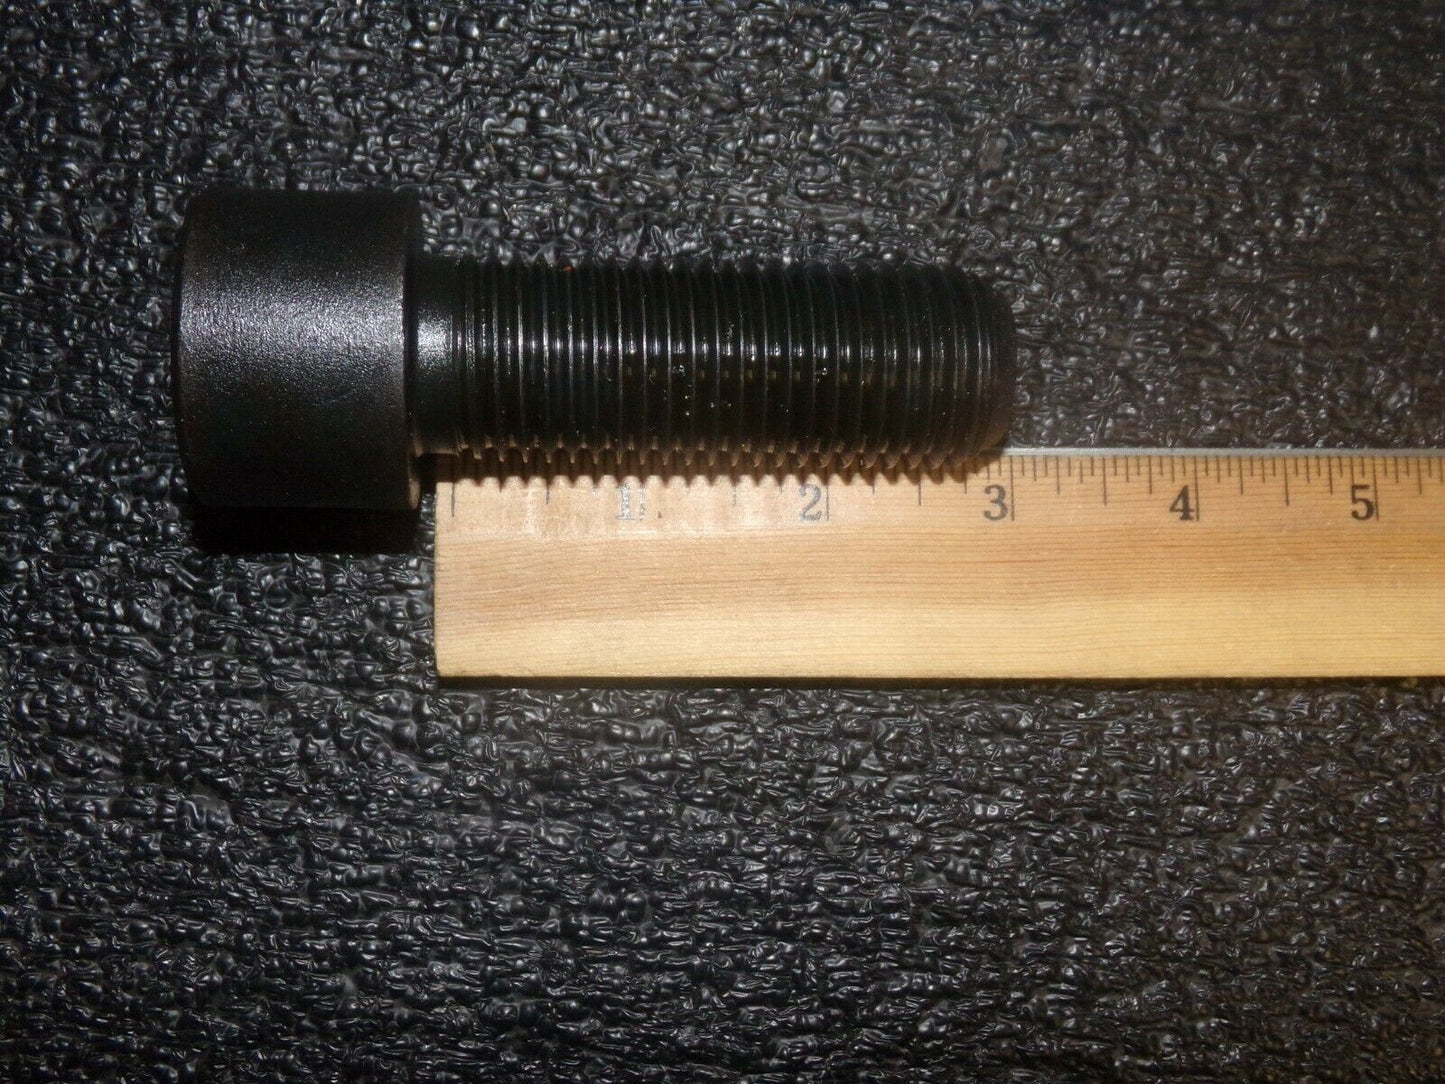 QTY: 2 M27 x 75 mm Socket Head Cap Screw, Din 912, 12.9 Alloy Steel, Thermal Black (183777381256-NBT02)